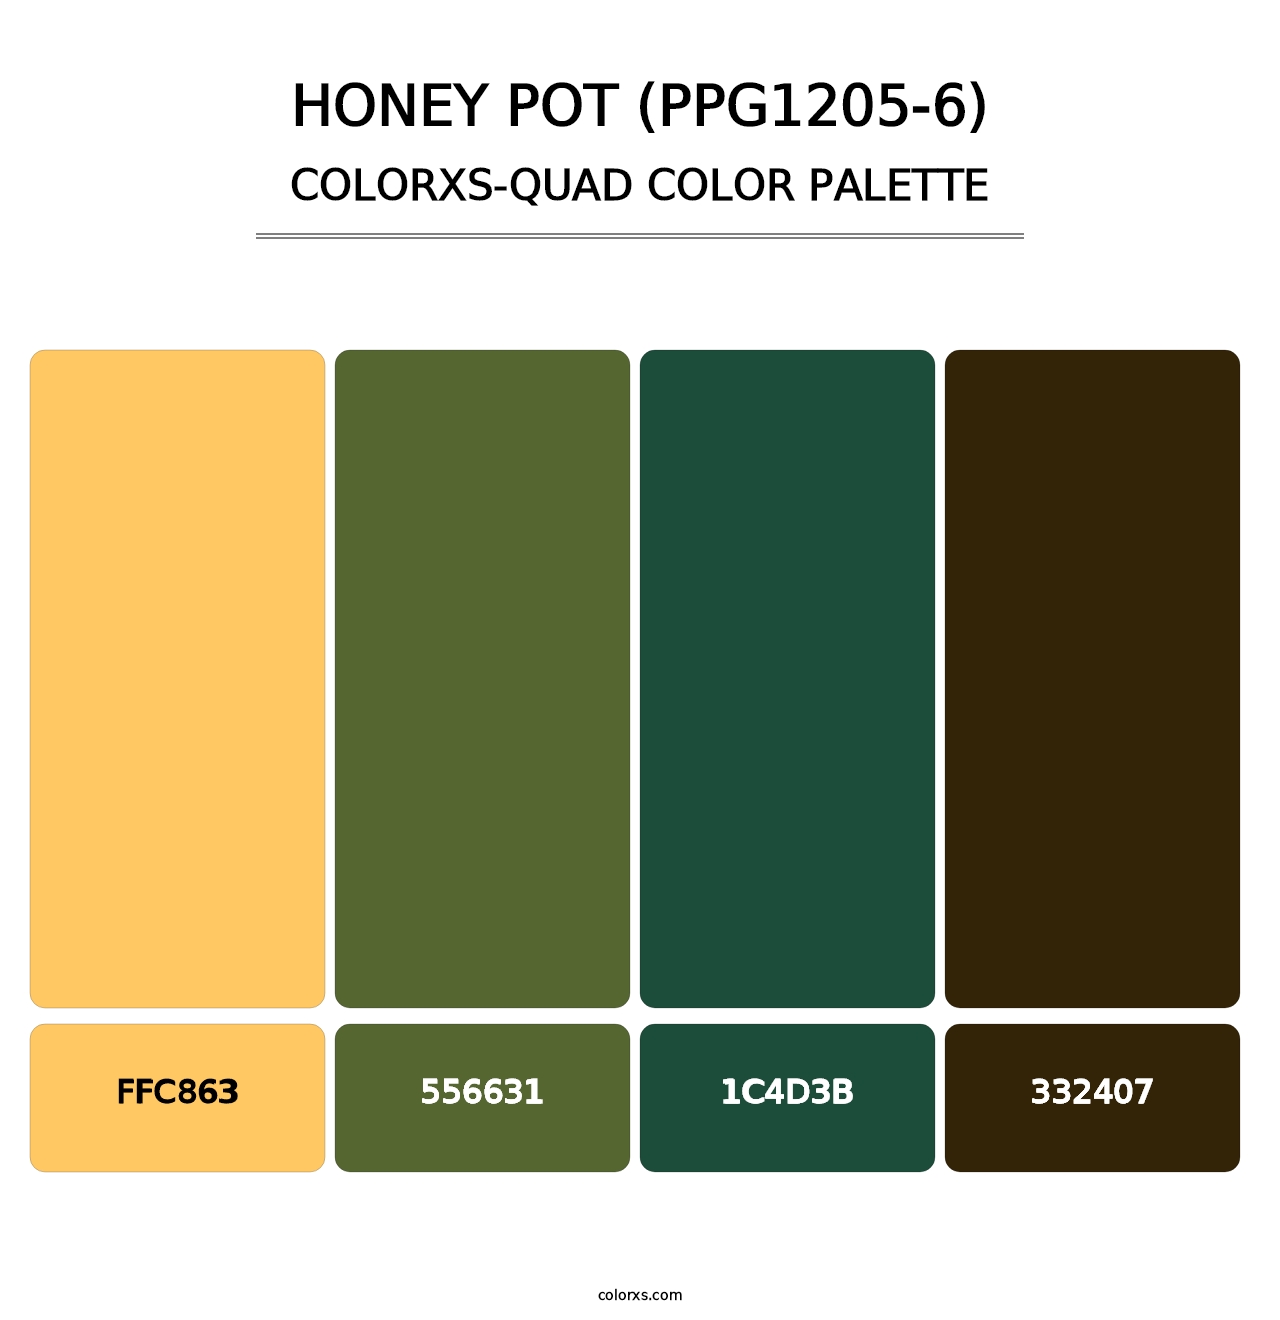 Honey Pot (PPG1205-6) - Colorxs Quad Palette